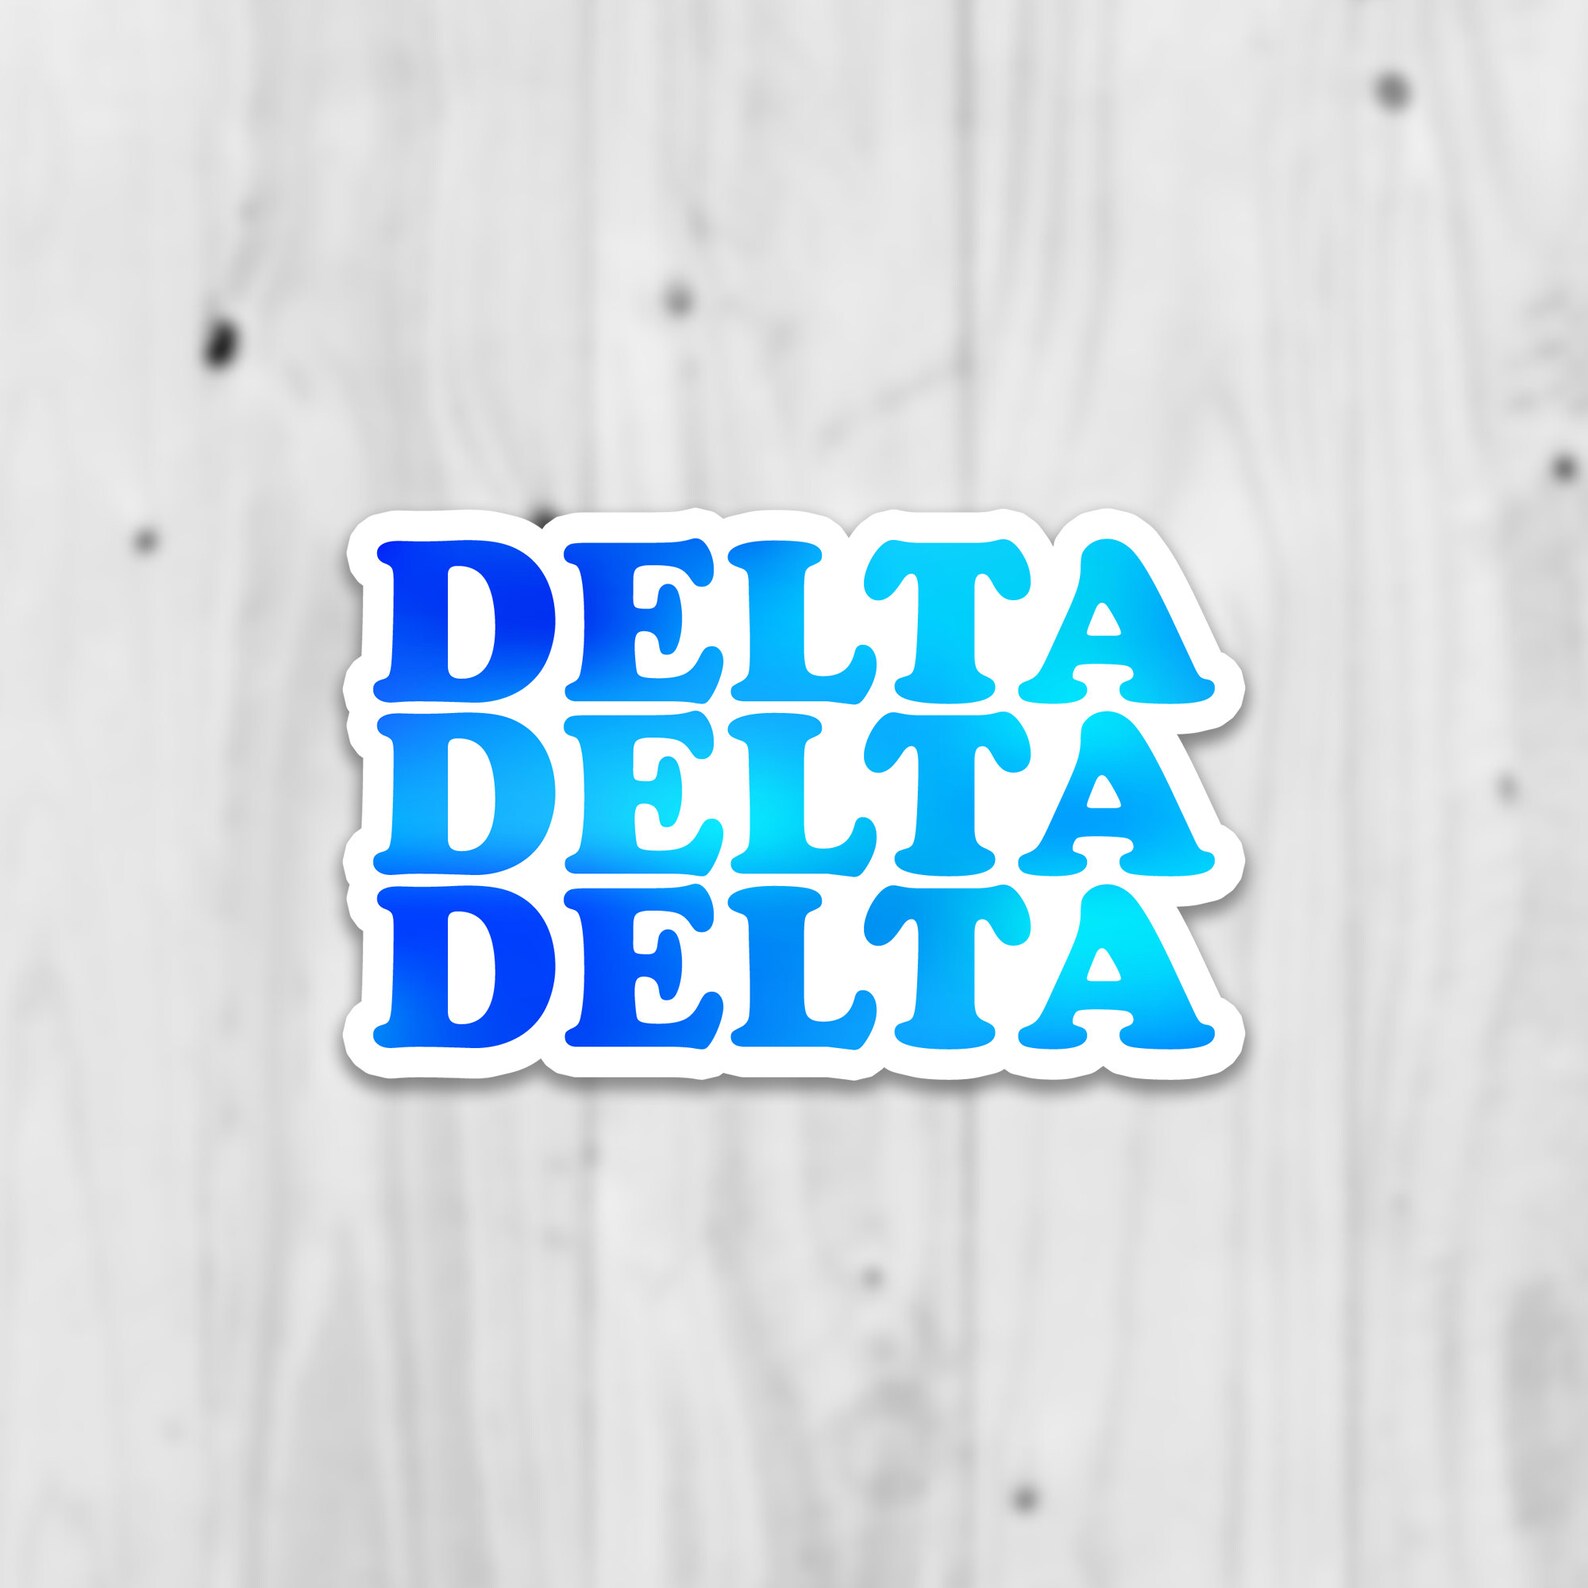 Delta Delta Delta Laptop Sticker Free Shipping Water | Etsy